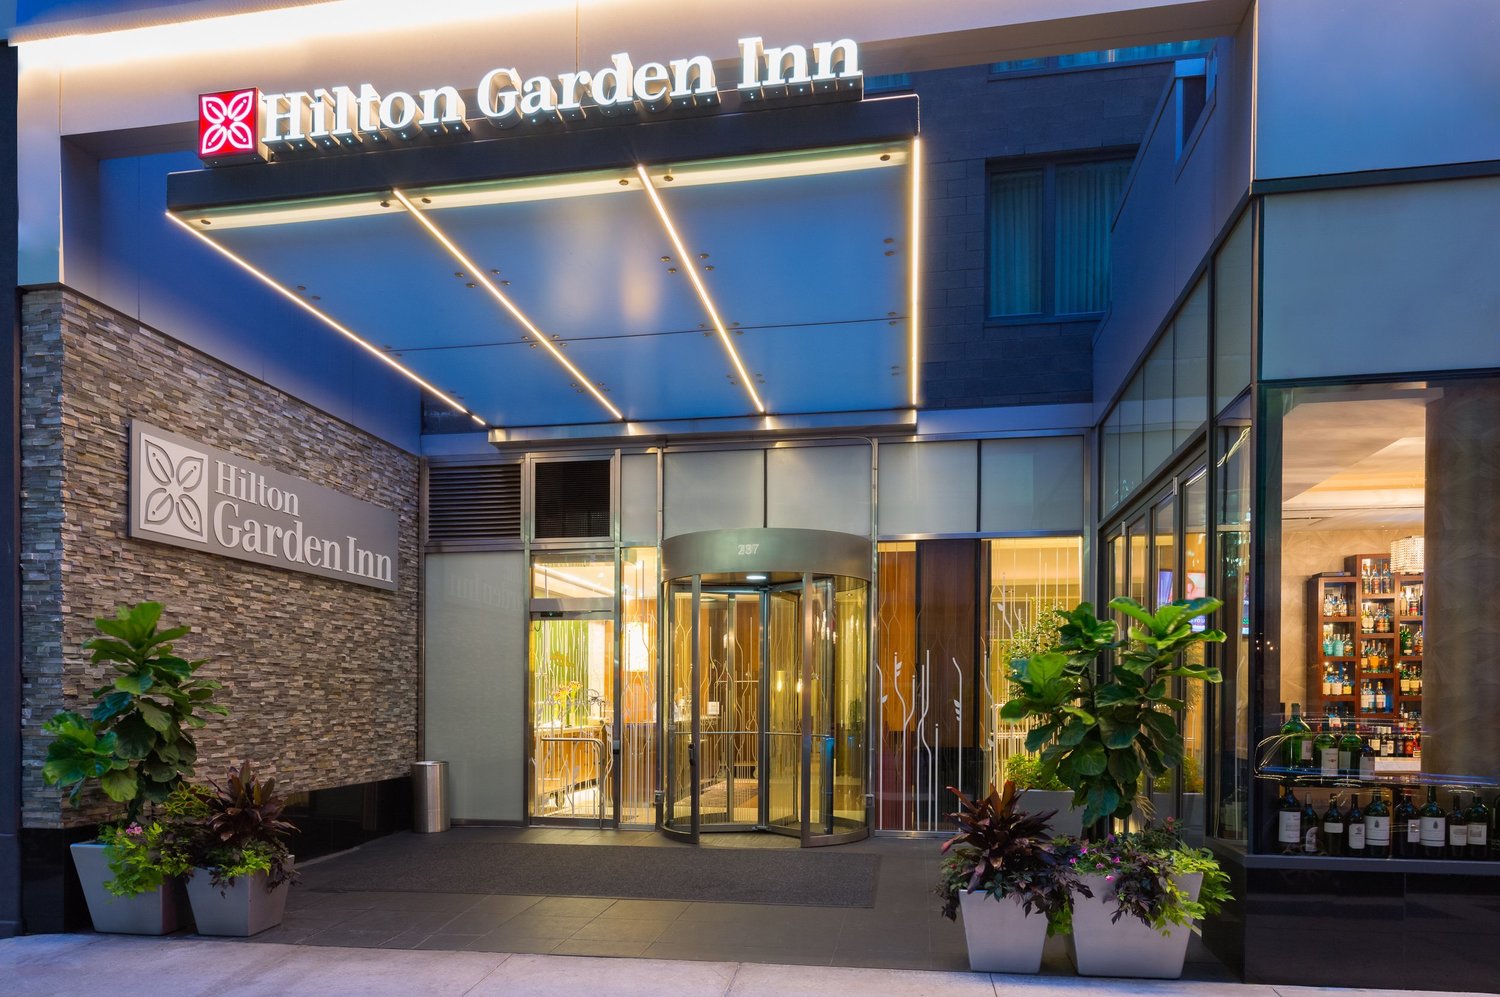 Hilton Garden Inn Central Park South New York Ny Jobs Hospitality Online